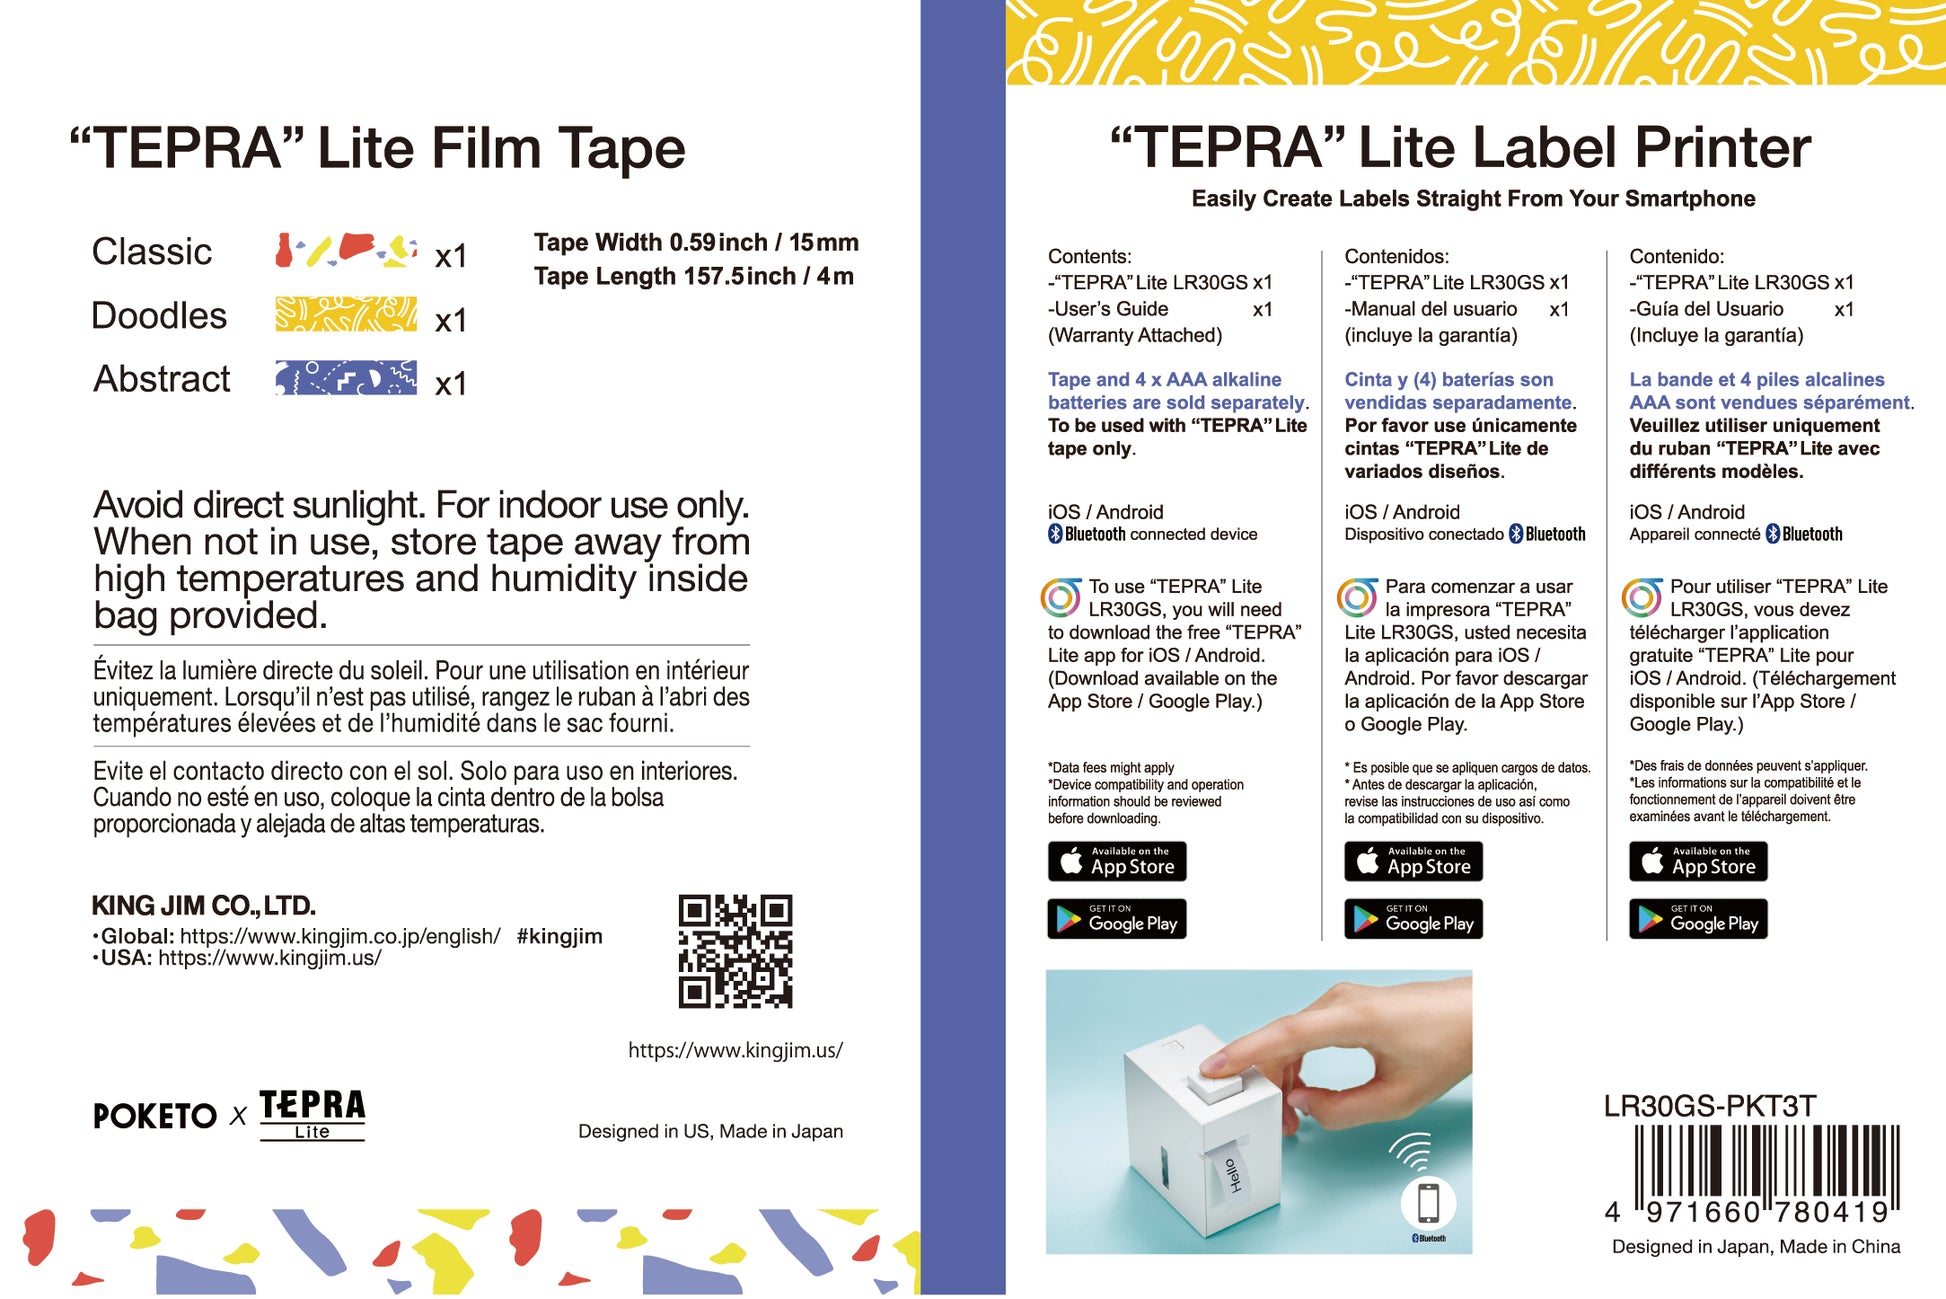 TEPRA Lite 3 tape Starter Pack POKETO Edition